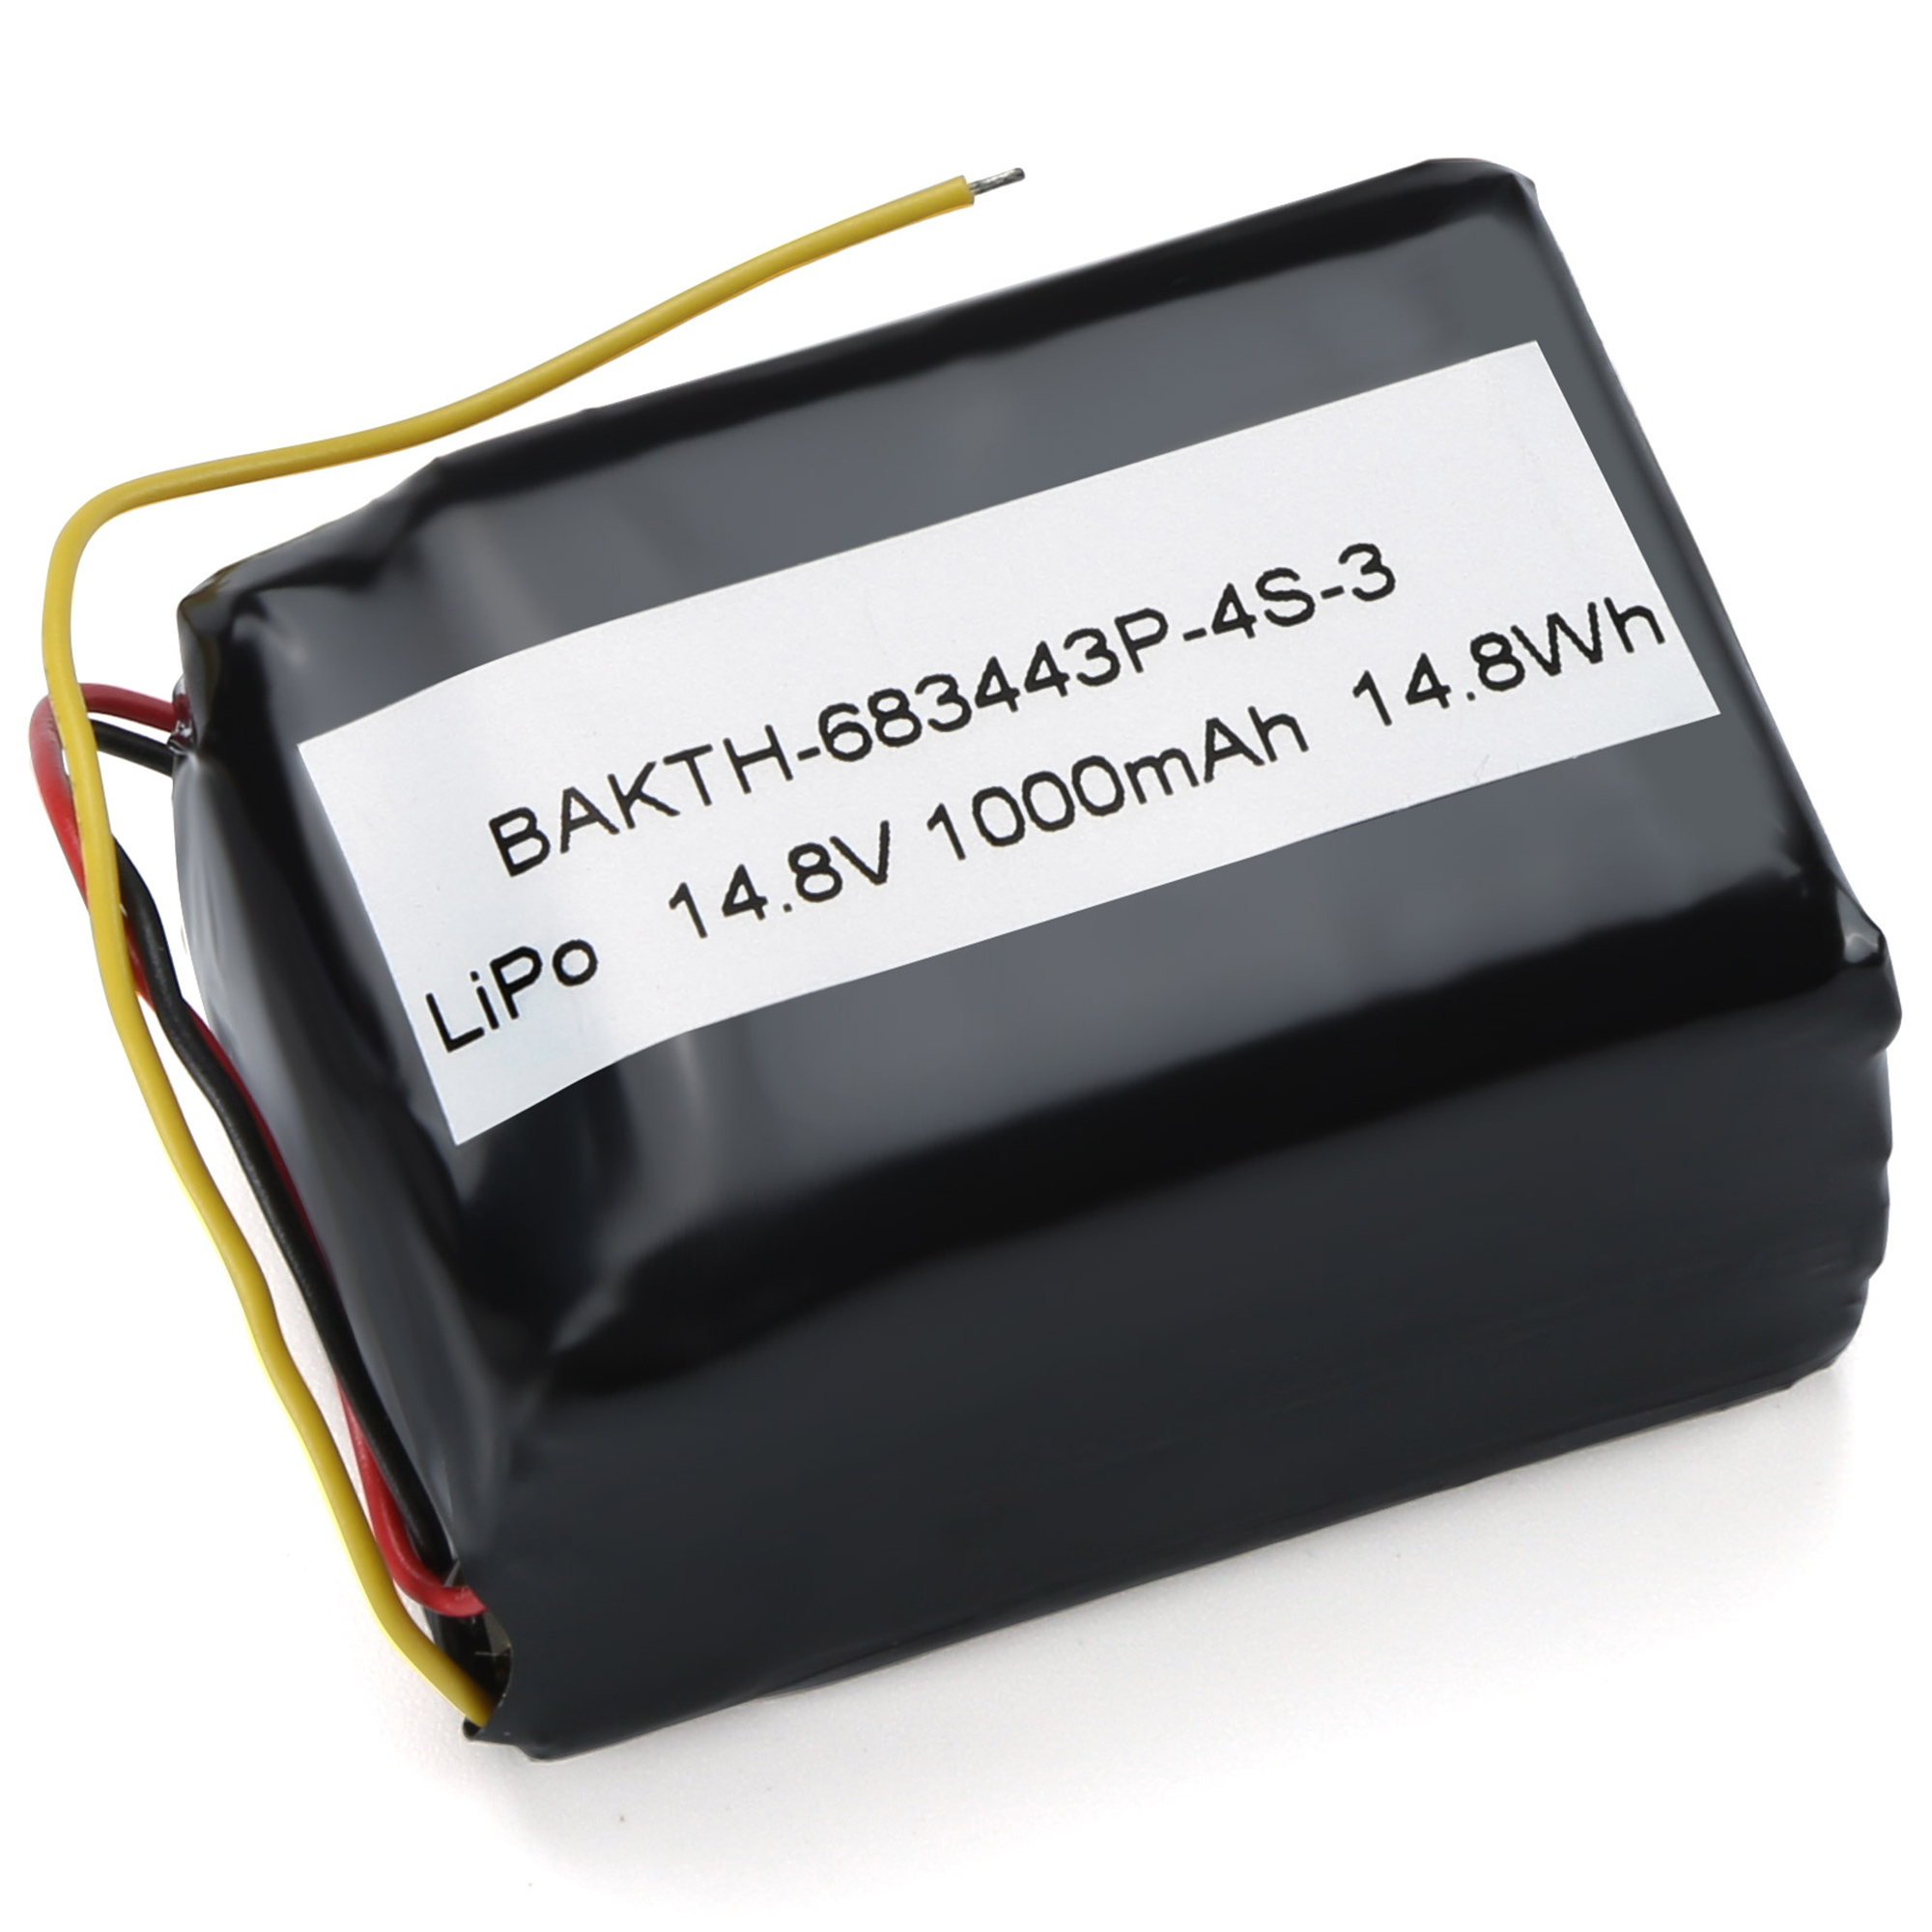 BAKTH-683443P-4S-3 wiederaufladbares Lithiumpolymerbatterie mit langer Lebensdauer 14,8 V 1000mah 